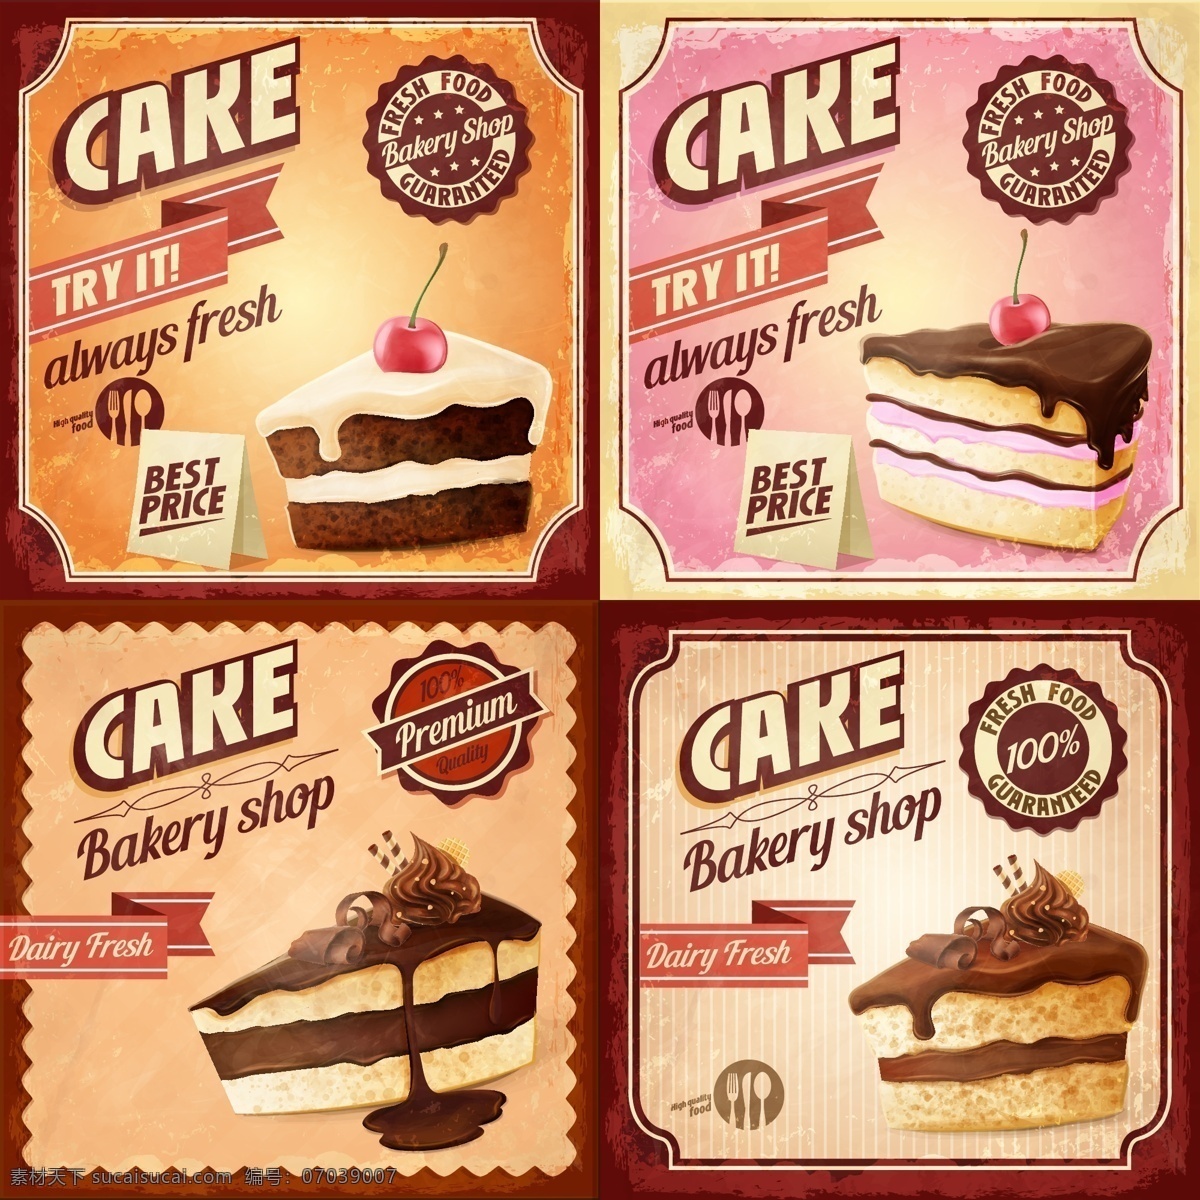 蛋糕 生日蛋糕 巧克力蛋糕 蜡烛 冰激凌蛋糕 糕点 生日快乐 happy 餐饮美食 美食 西点 欧式西点 奶油蛋糕 鲜奶蛋糕 蛋糕diy 生活百科